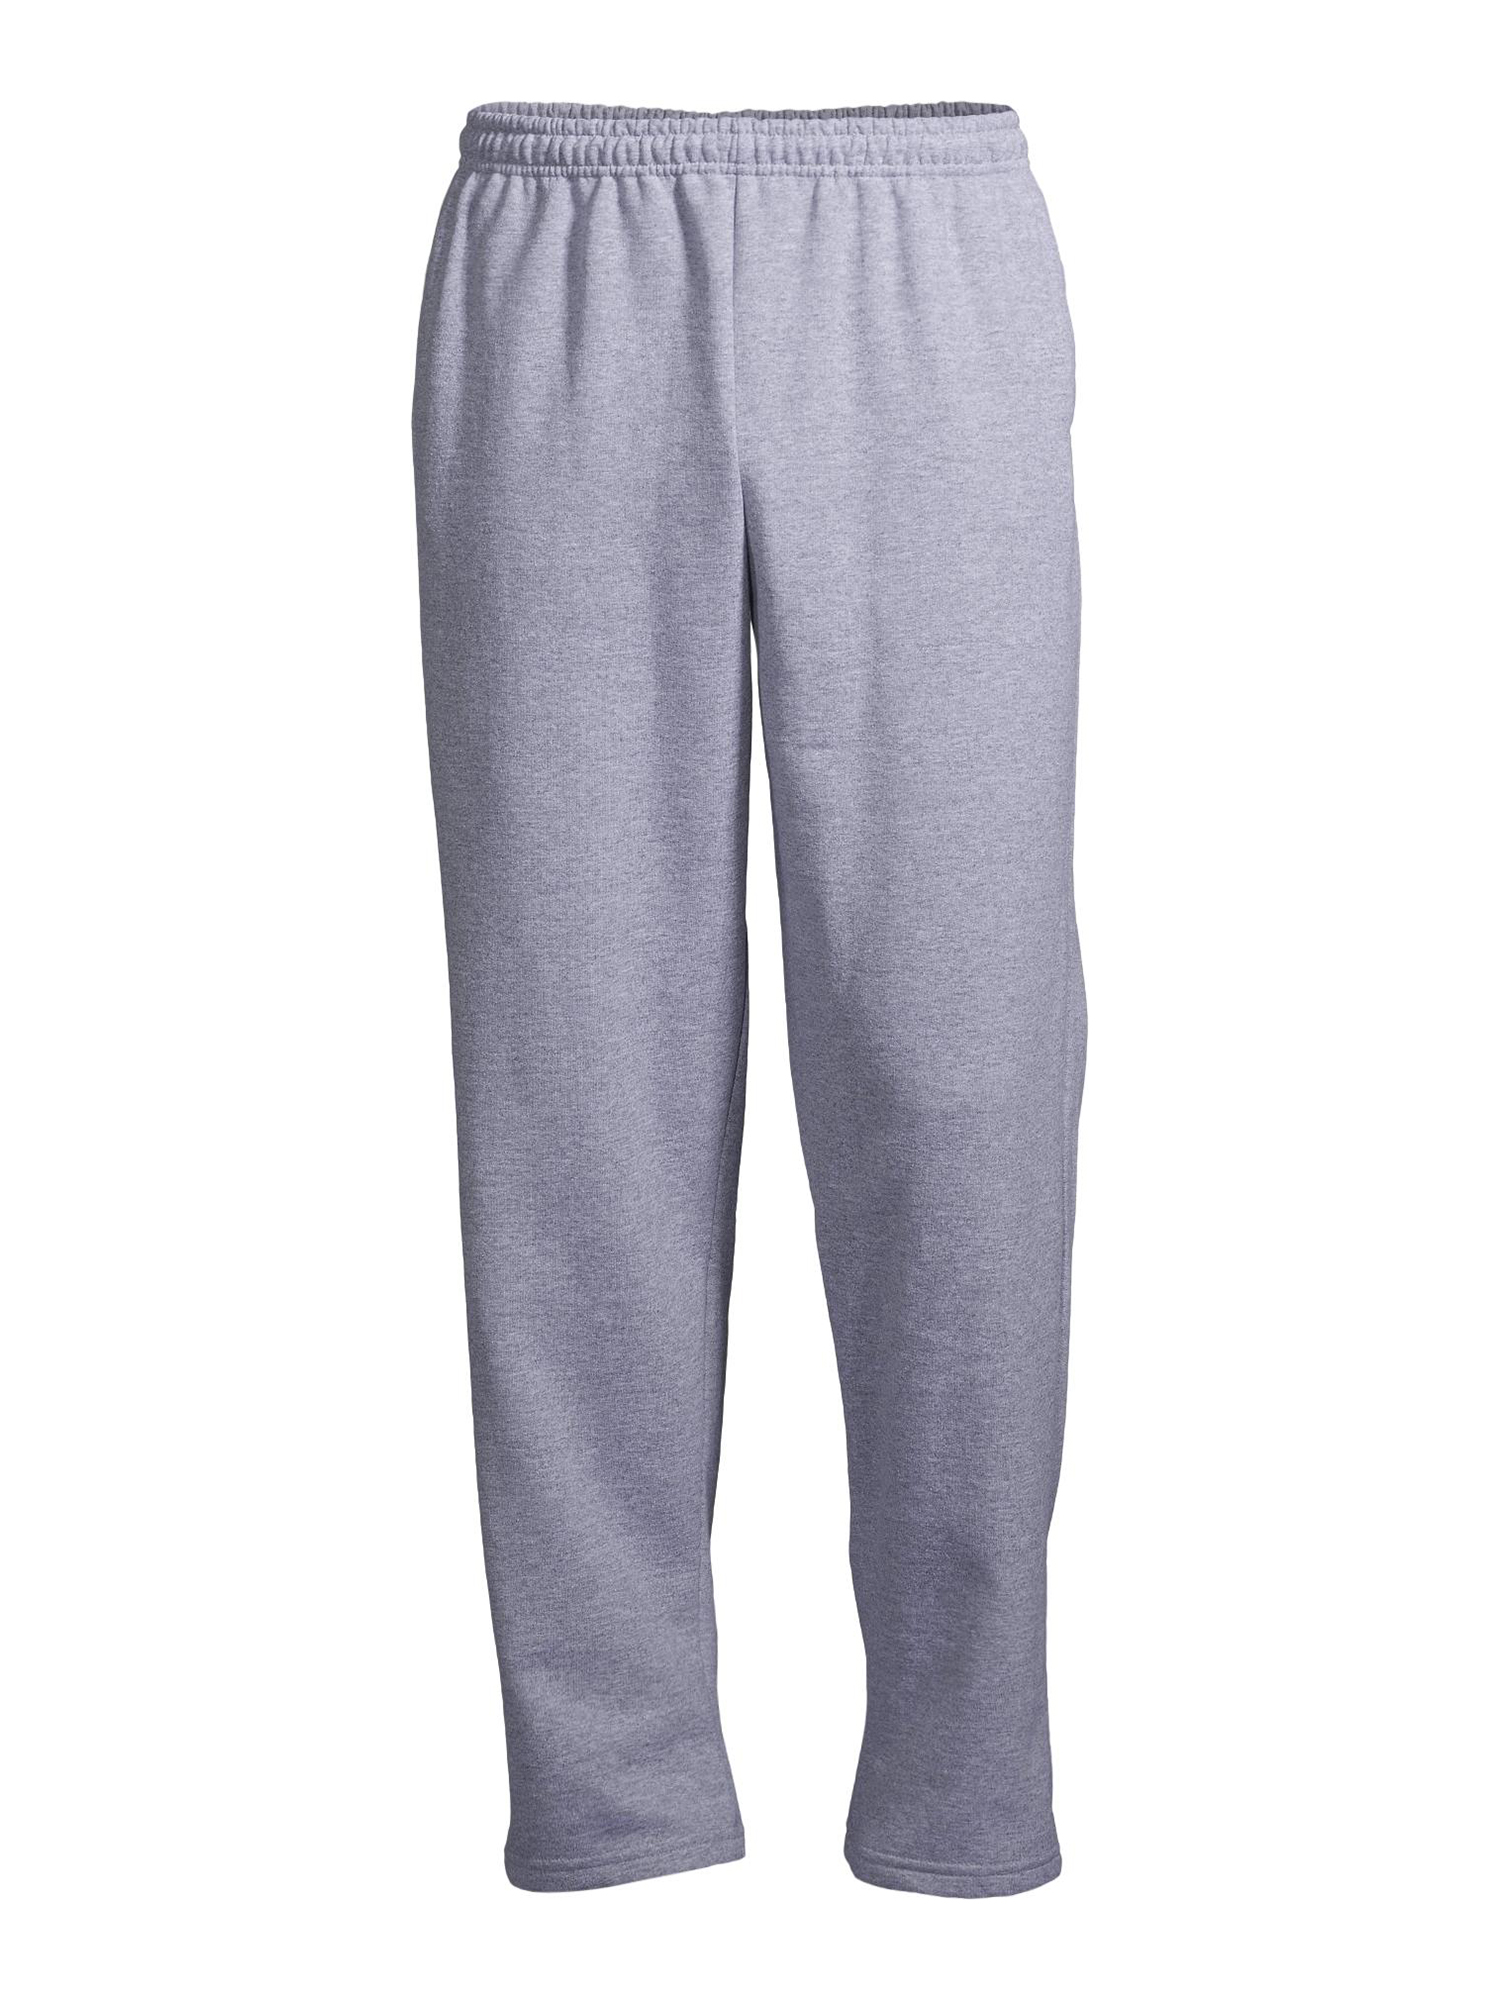 Gildan Men's Fleece Open Bottom Pocketed Sweatpants - Walmart.com